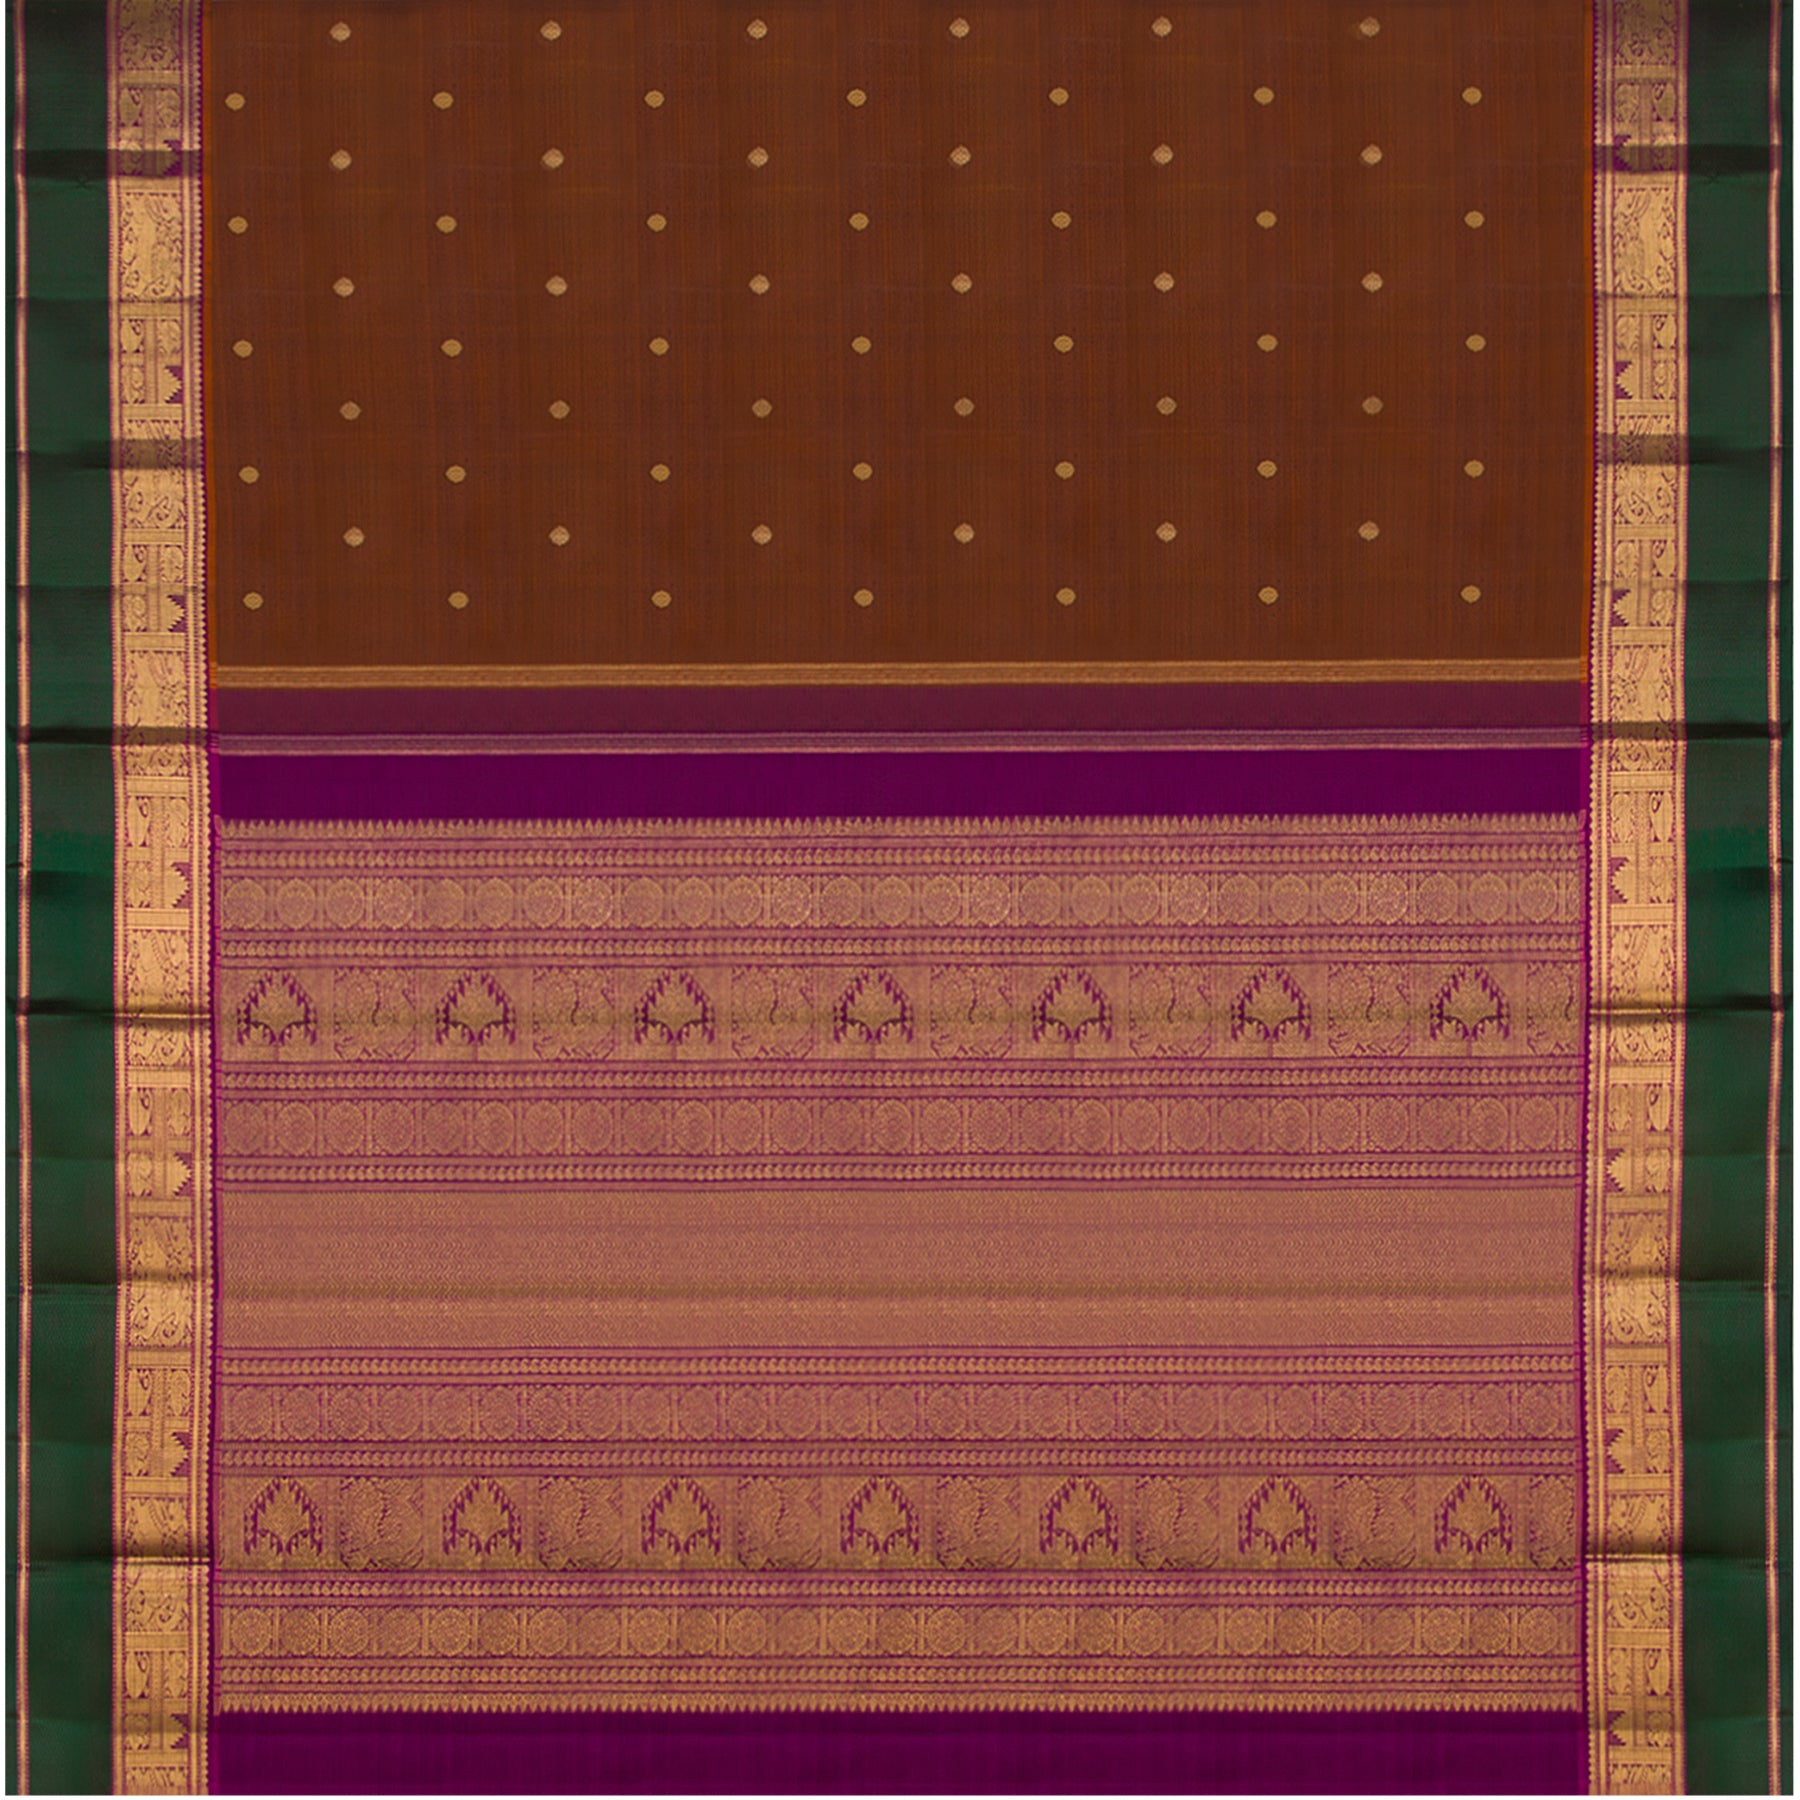 Kanakavalli Kanjivaram Silk Sari 23-599-HS001-03153 - Full View